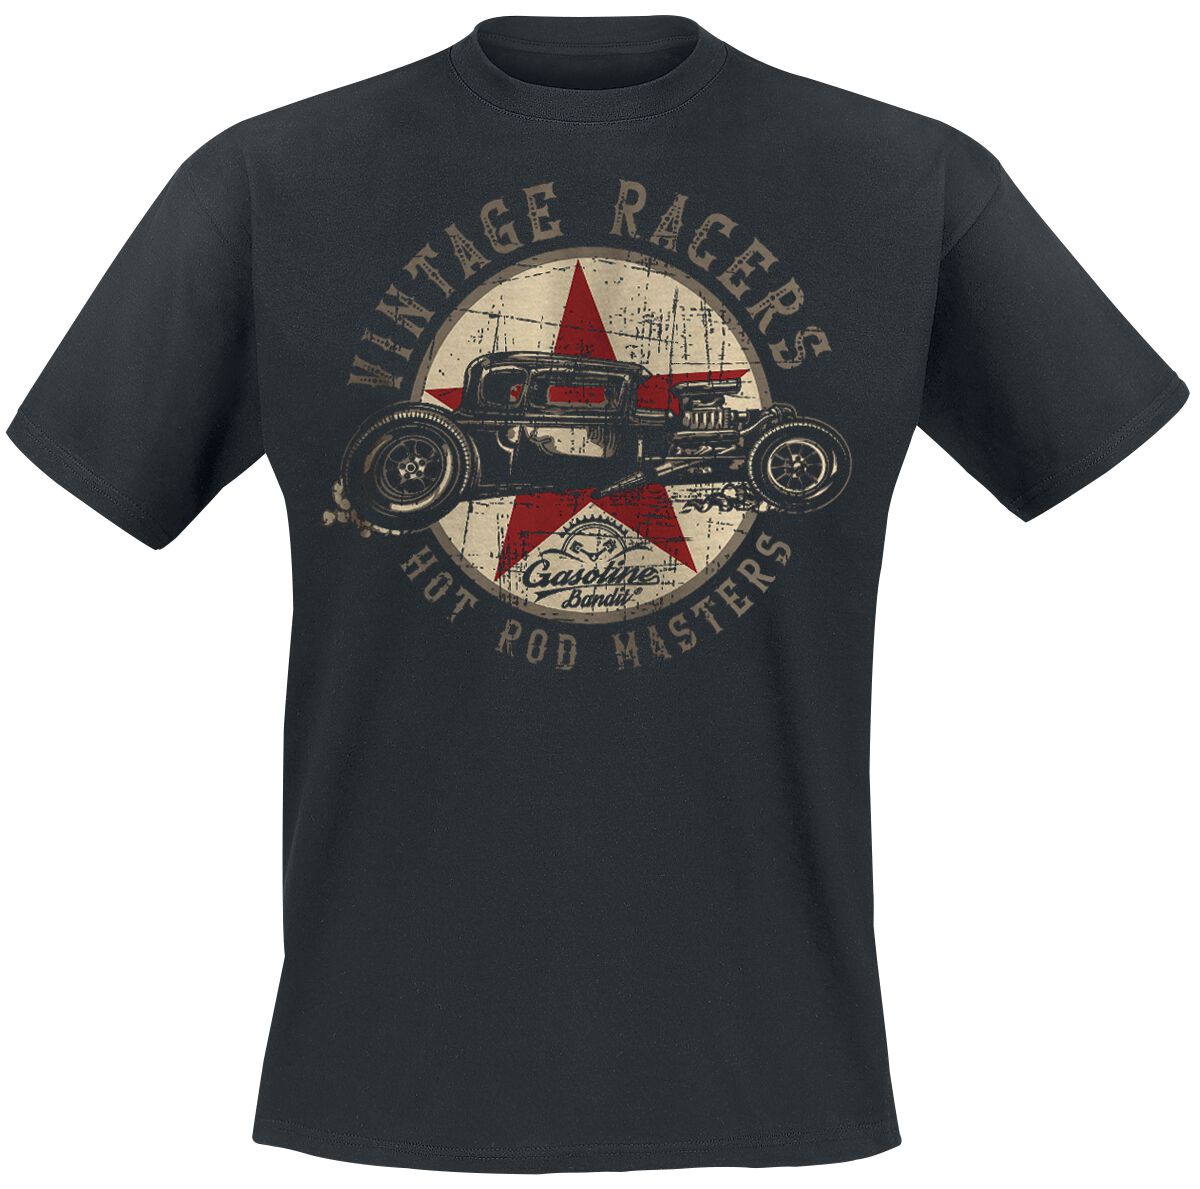 Gasoline Bandit - Rockabilly T-Shirt - Vintage Racers - S bis 3XL - für Männer - Größe S - schwarz